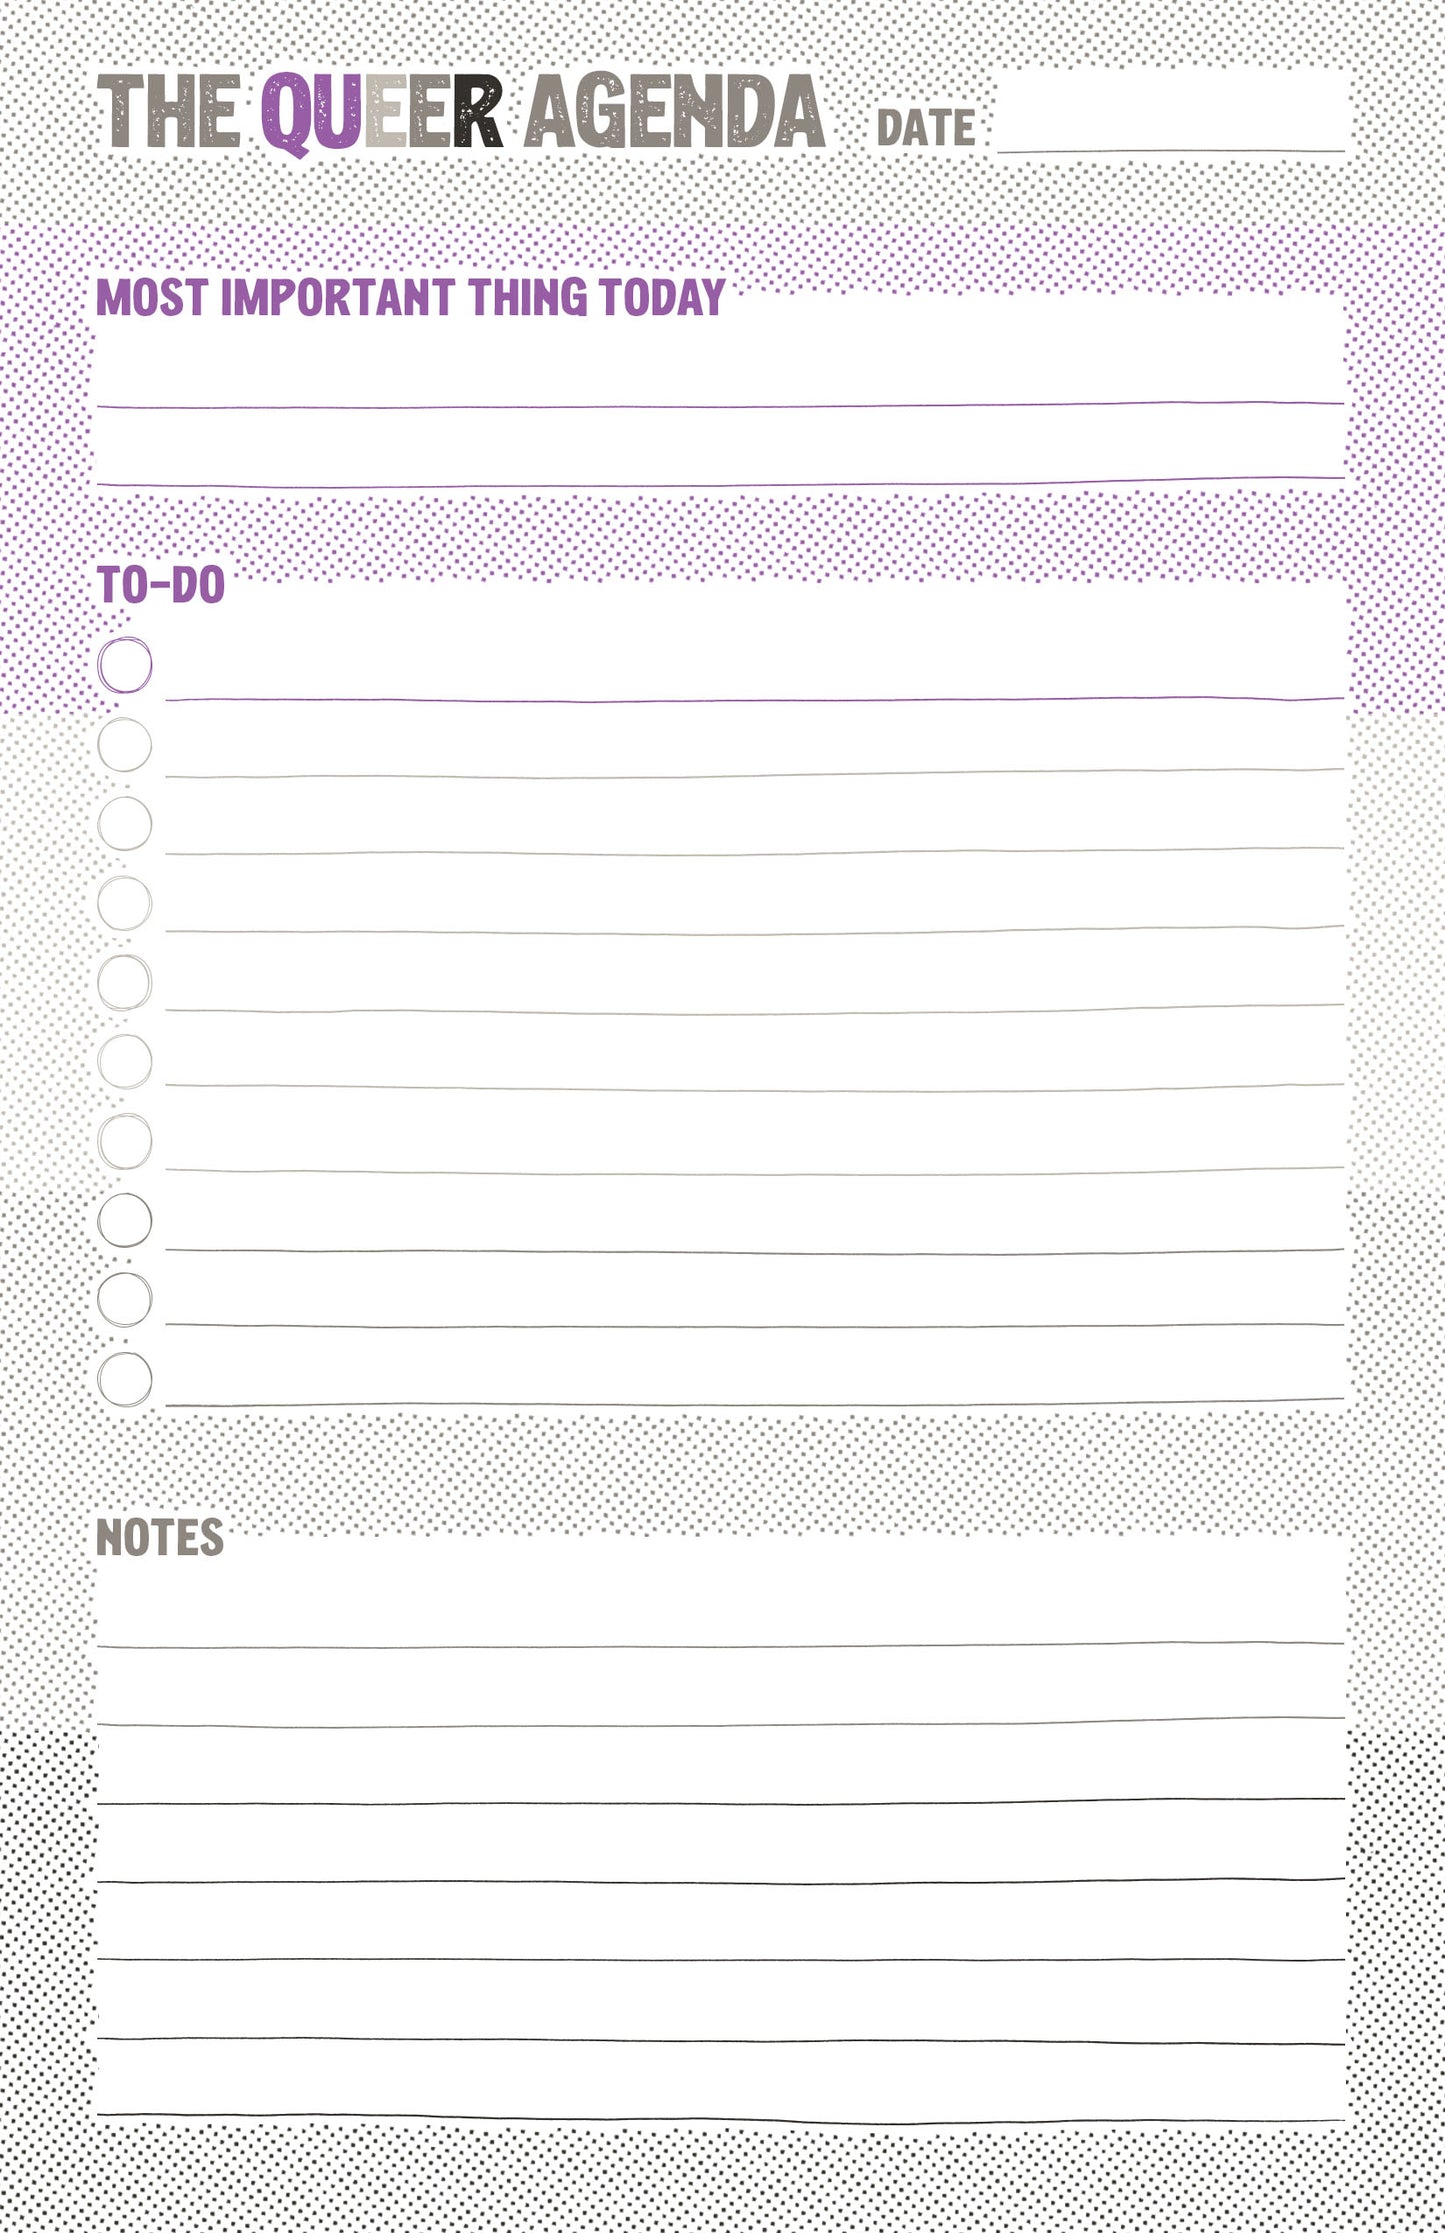 Daily Agenda Notepad: Halftone